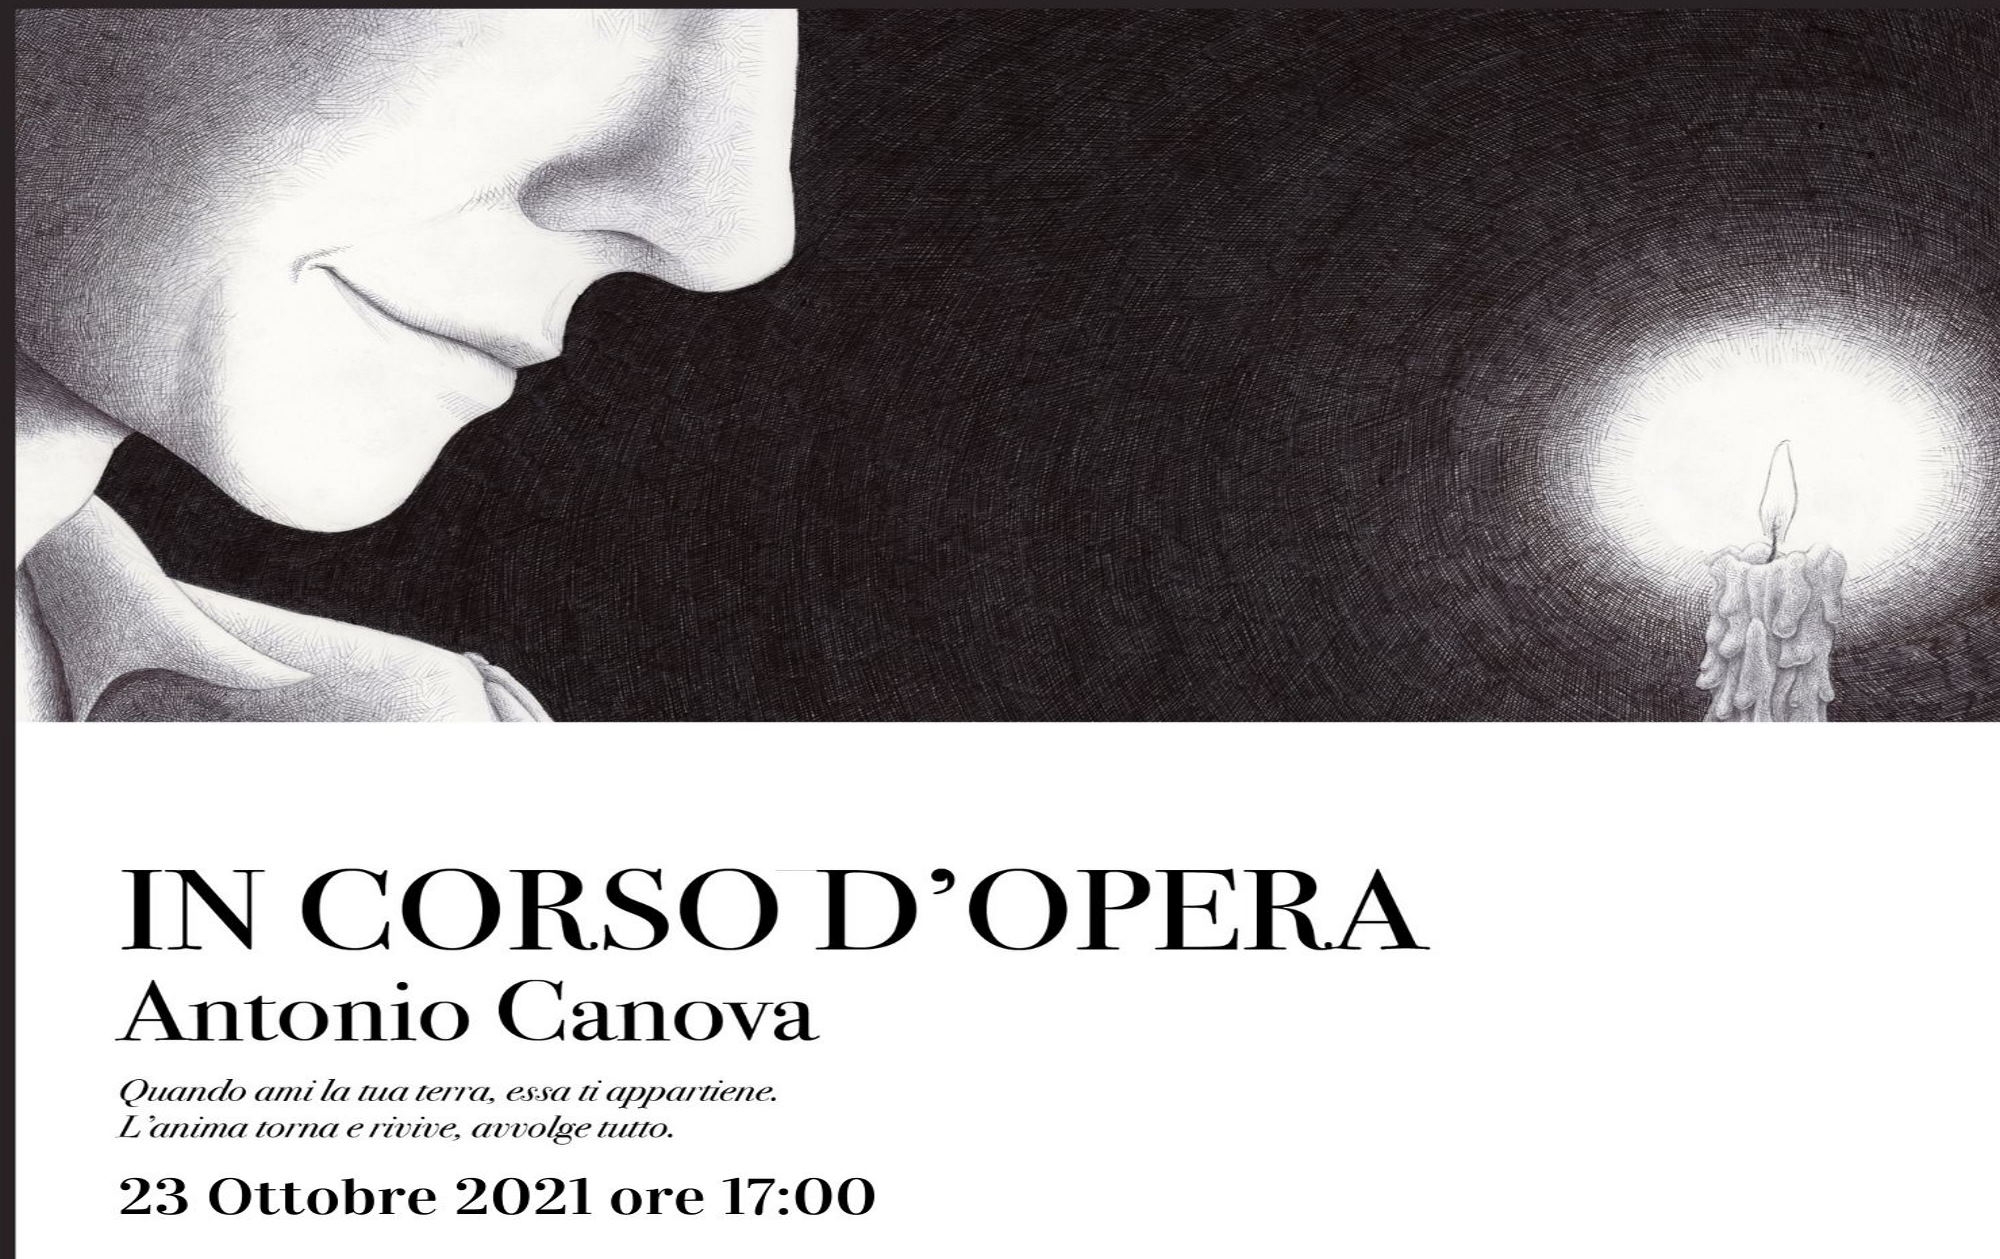 Immagine In corso d'opera. Antonio Canova